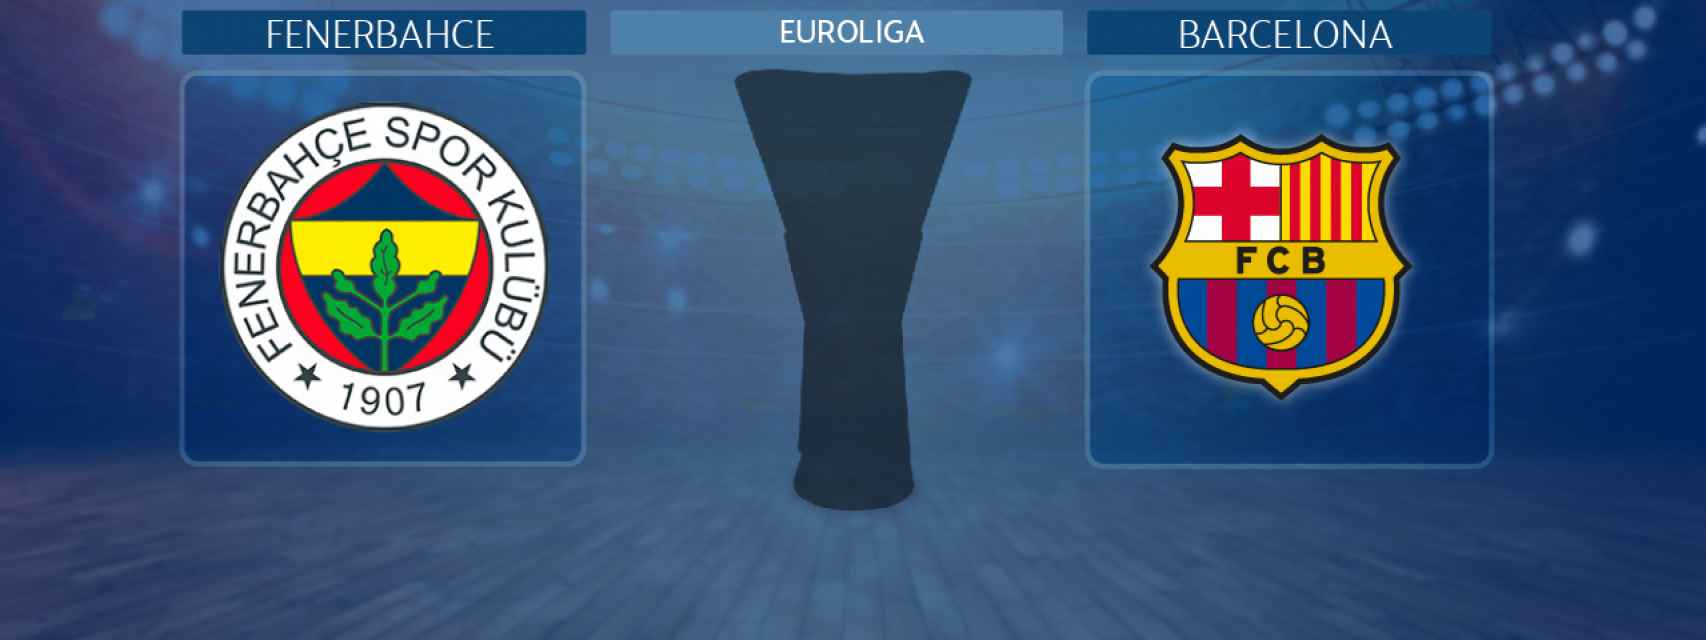 Fenerbahce - Barcelona, partido de la Euroliga